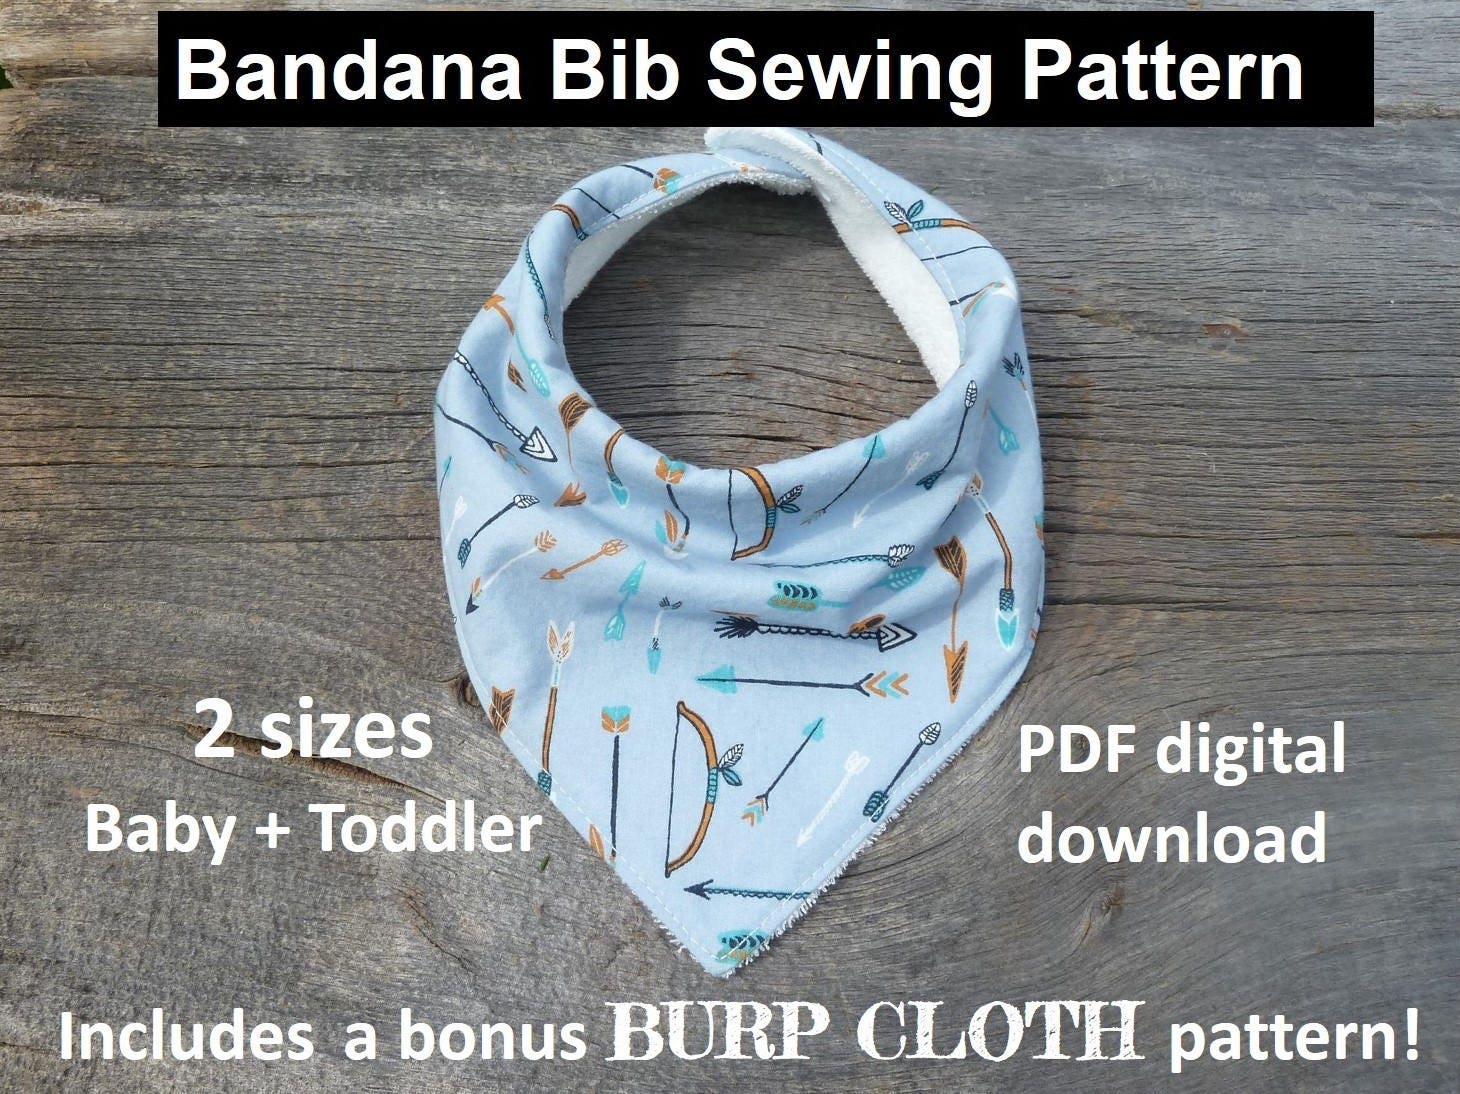 bandana-bib-sewing-pattern-pdf-bandana-bib-bibdana-pattern